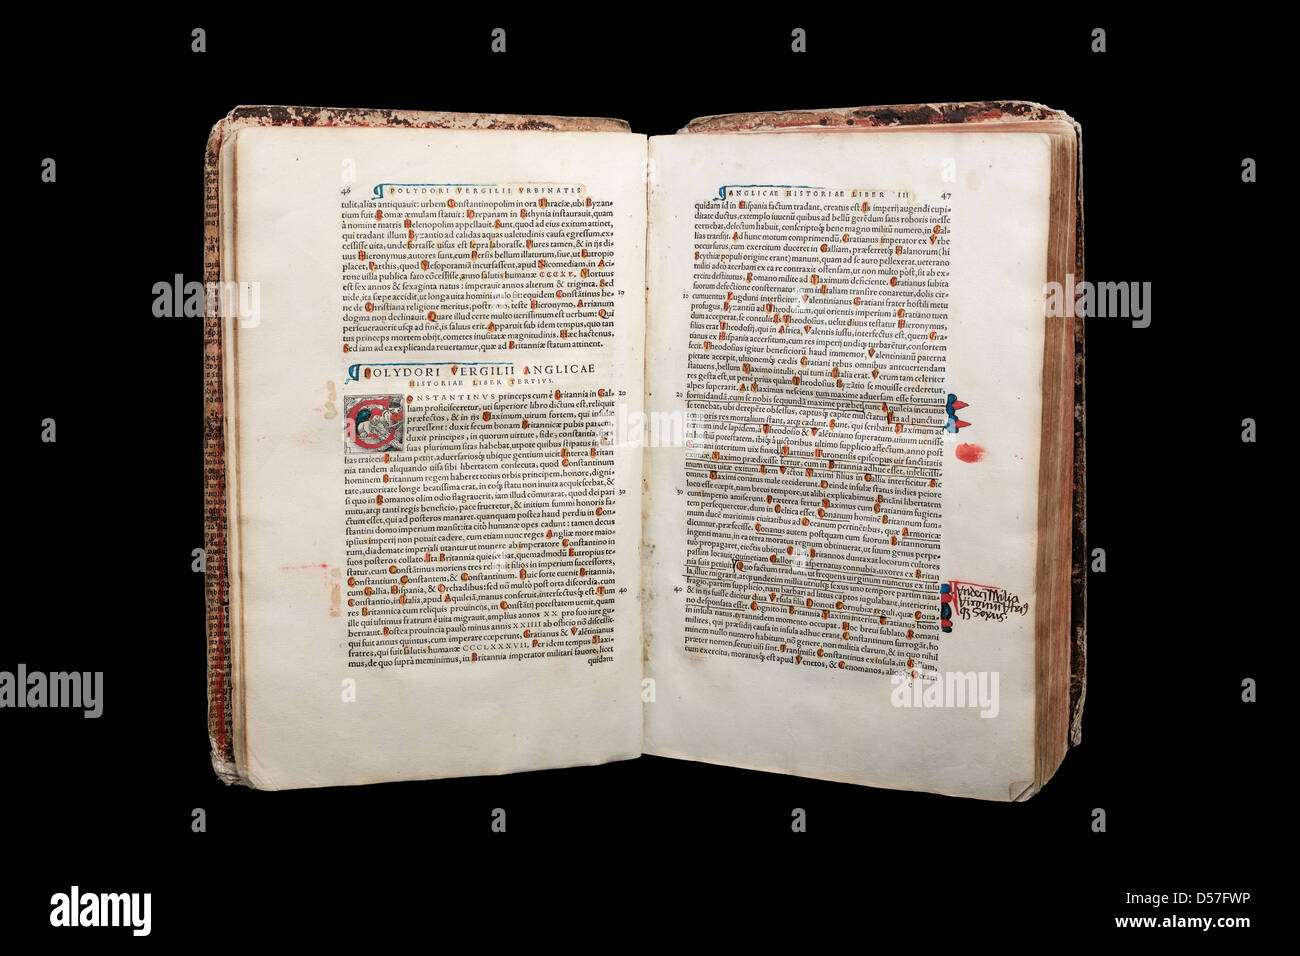 Ein altes Buch (Polydori Vergilii Urbinatis Anglicae Historiae Liber Primus) - stammt aus dem Jahre 1534 - im Studio fotografiert. Stockfoto